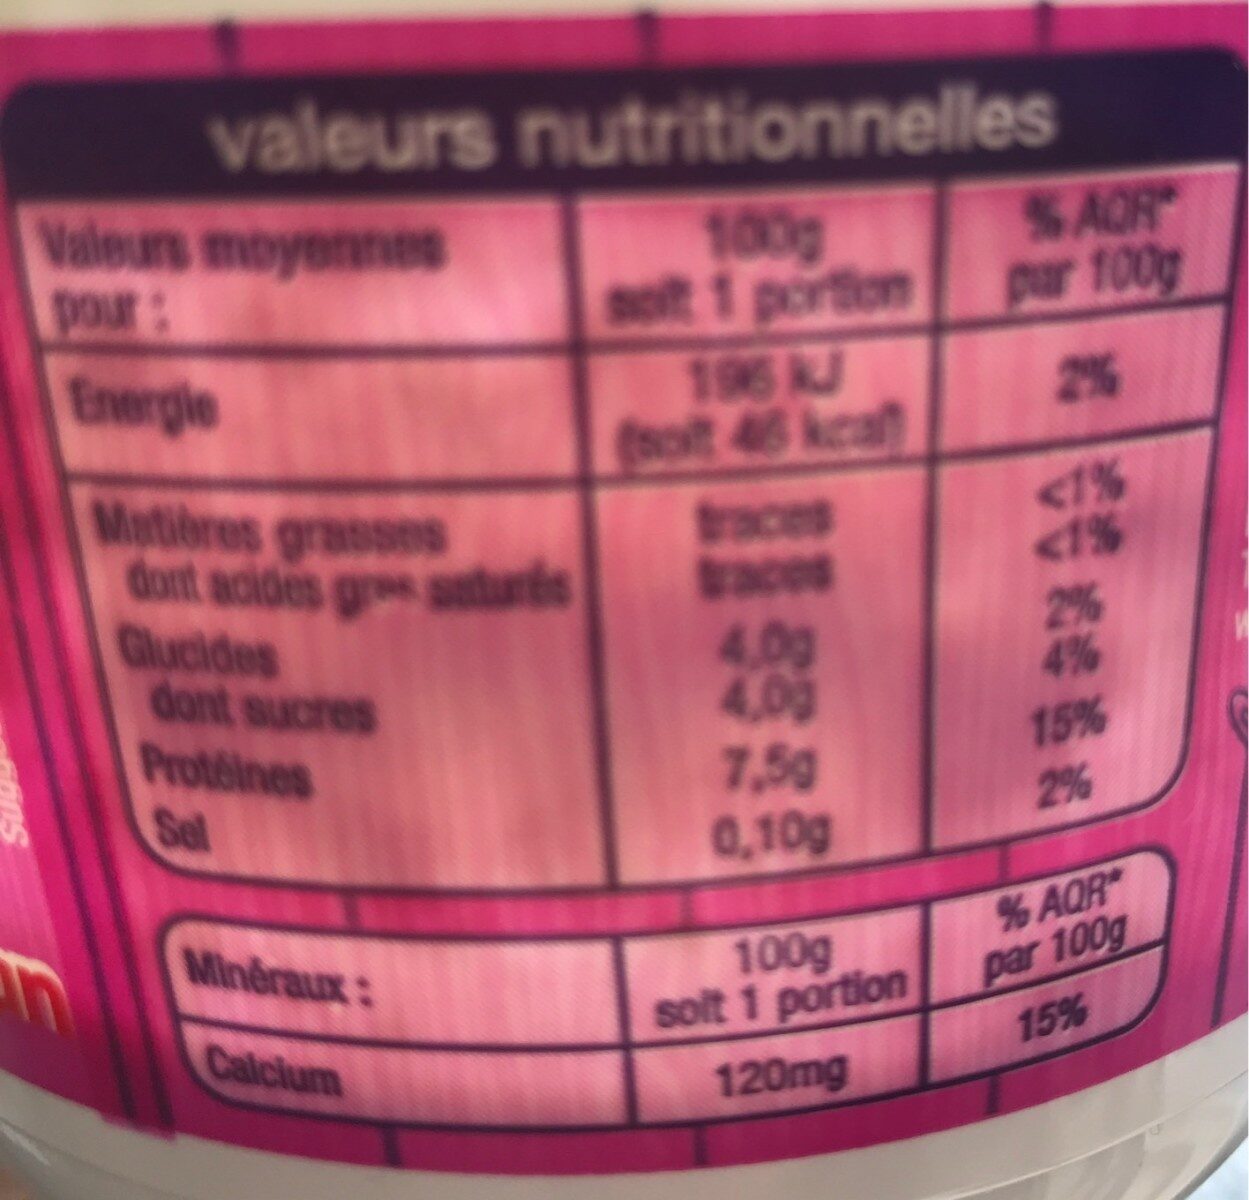 Fromage blancDoux et Onctueux0% de matière grasseLait Origine FranceSource de calcium - Nutrition facts - fr